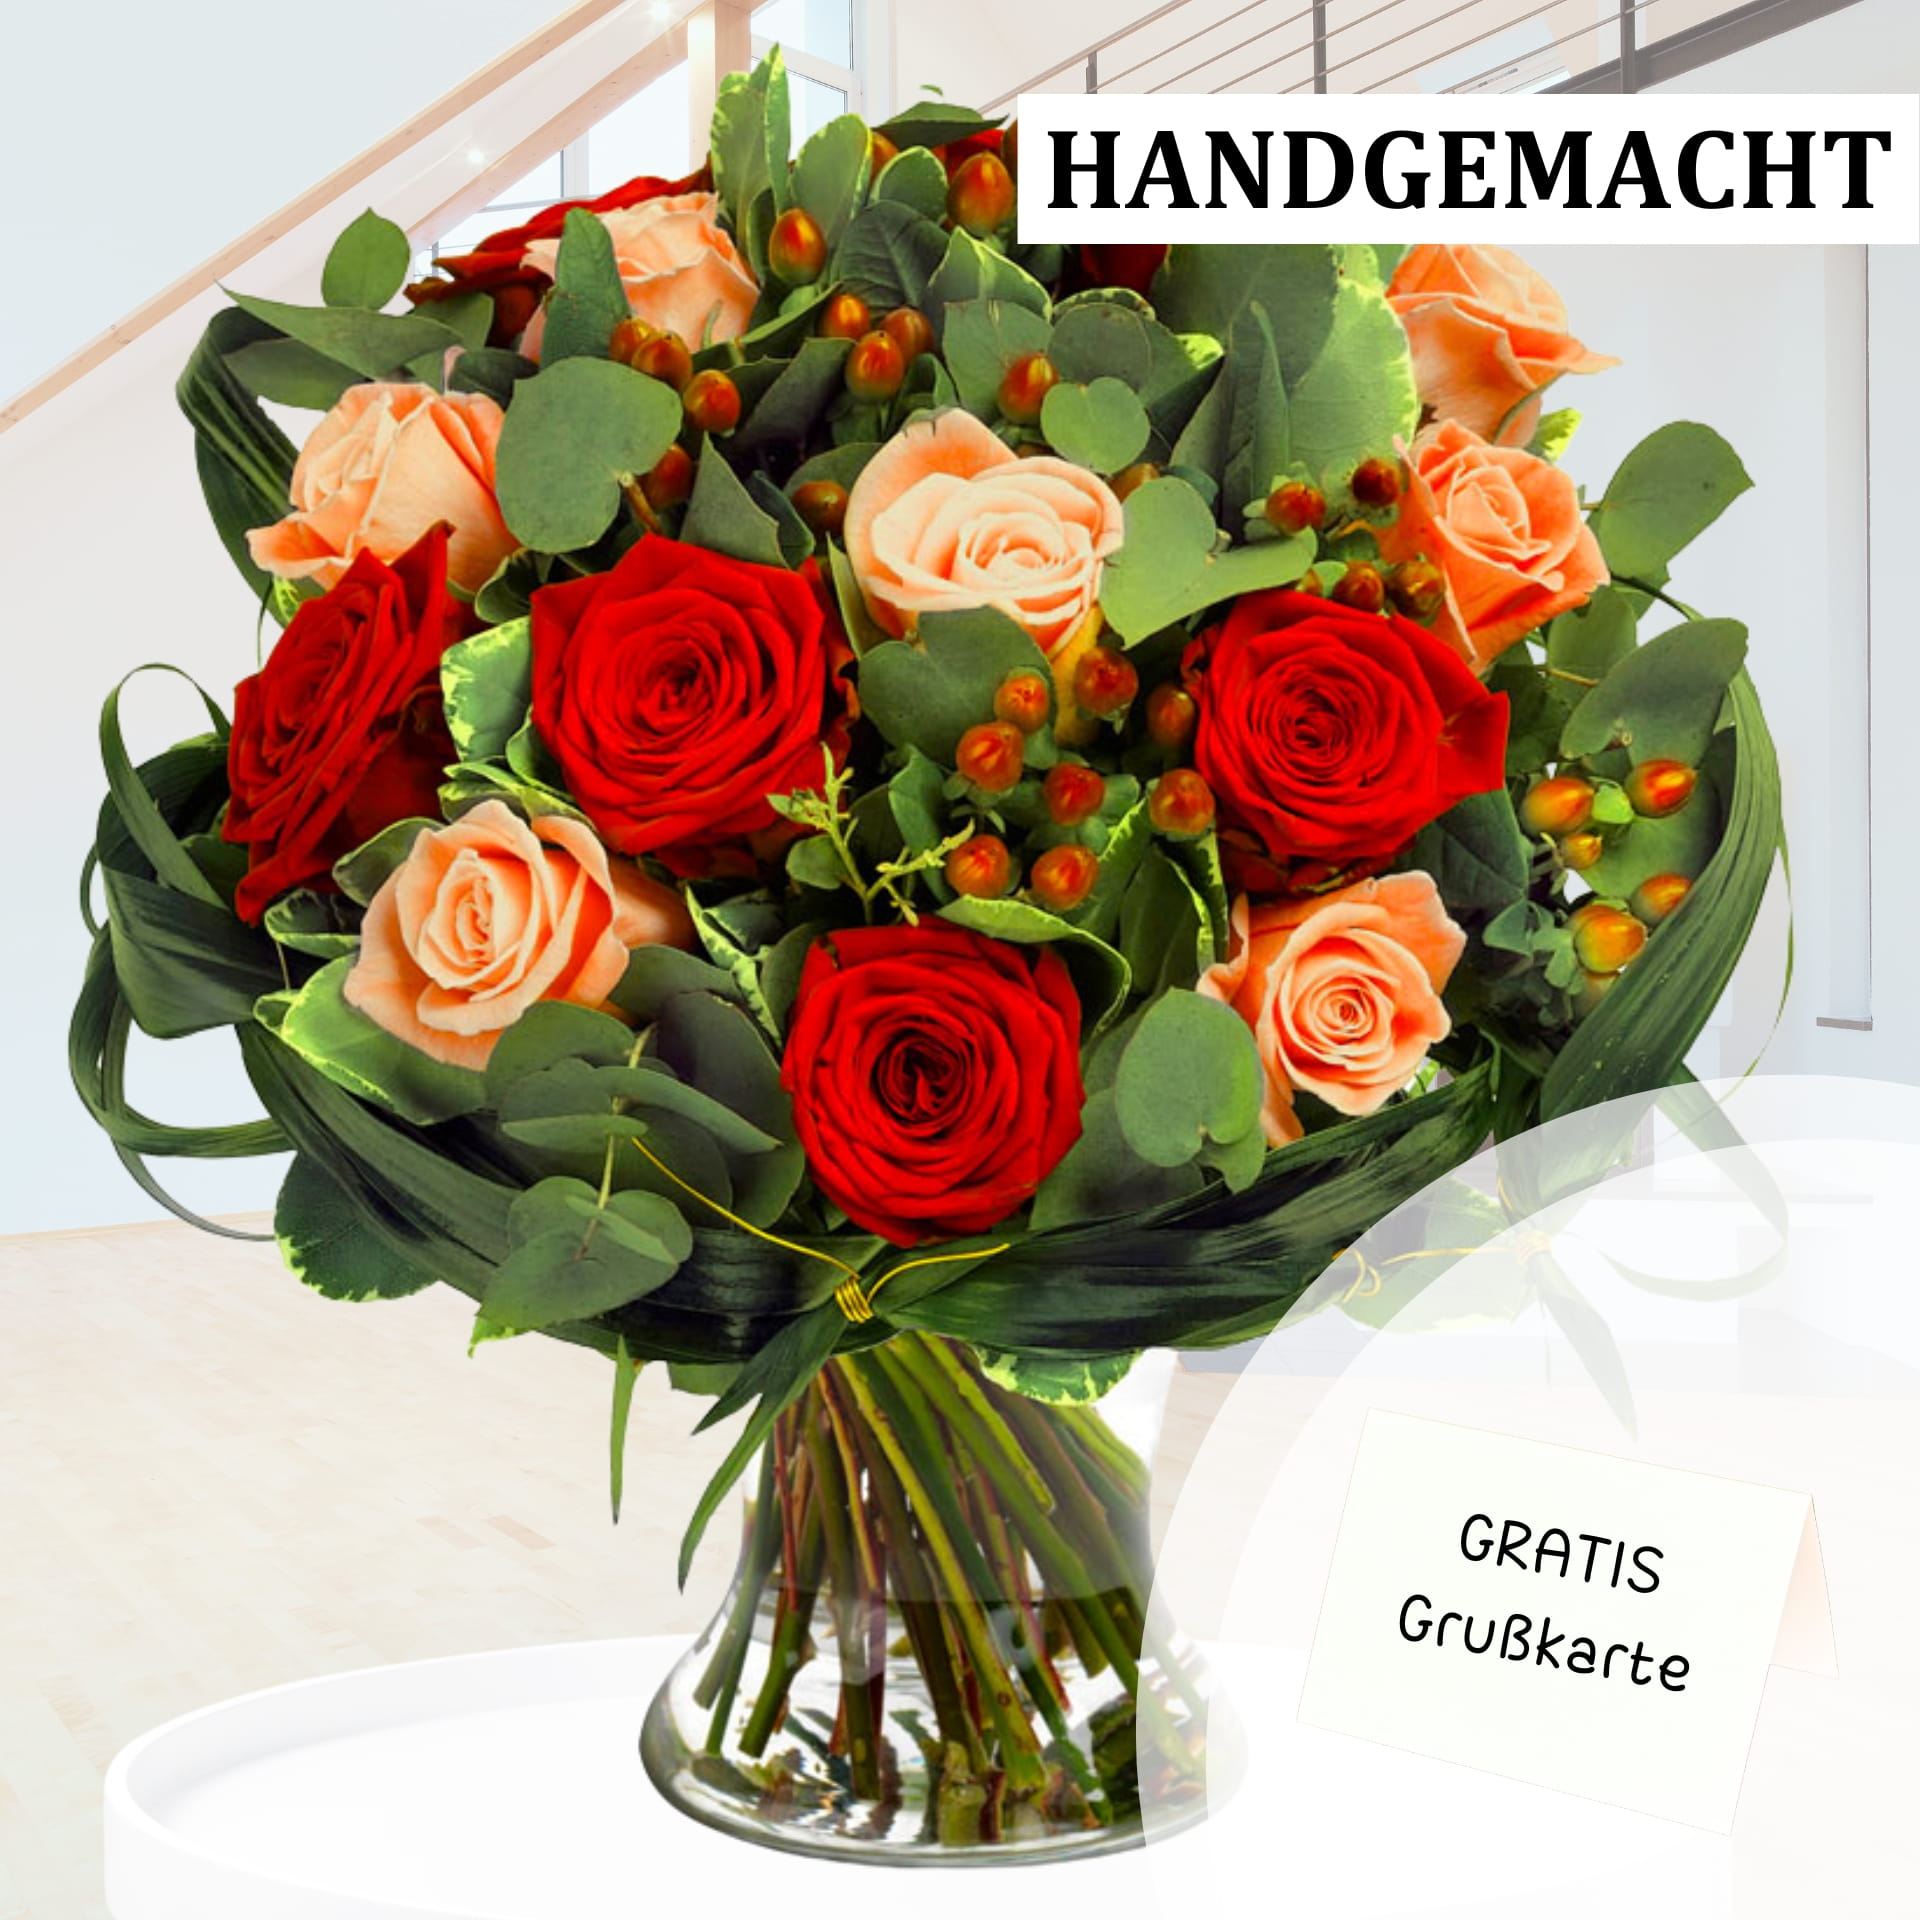 Eleganter Blumenstrauß aus roten und cremefarbenen Rosen, verziert mit Grün und Beeren, inklusive Grußkarte